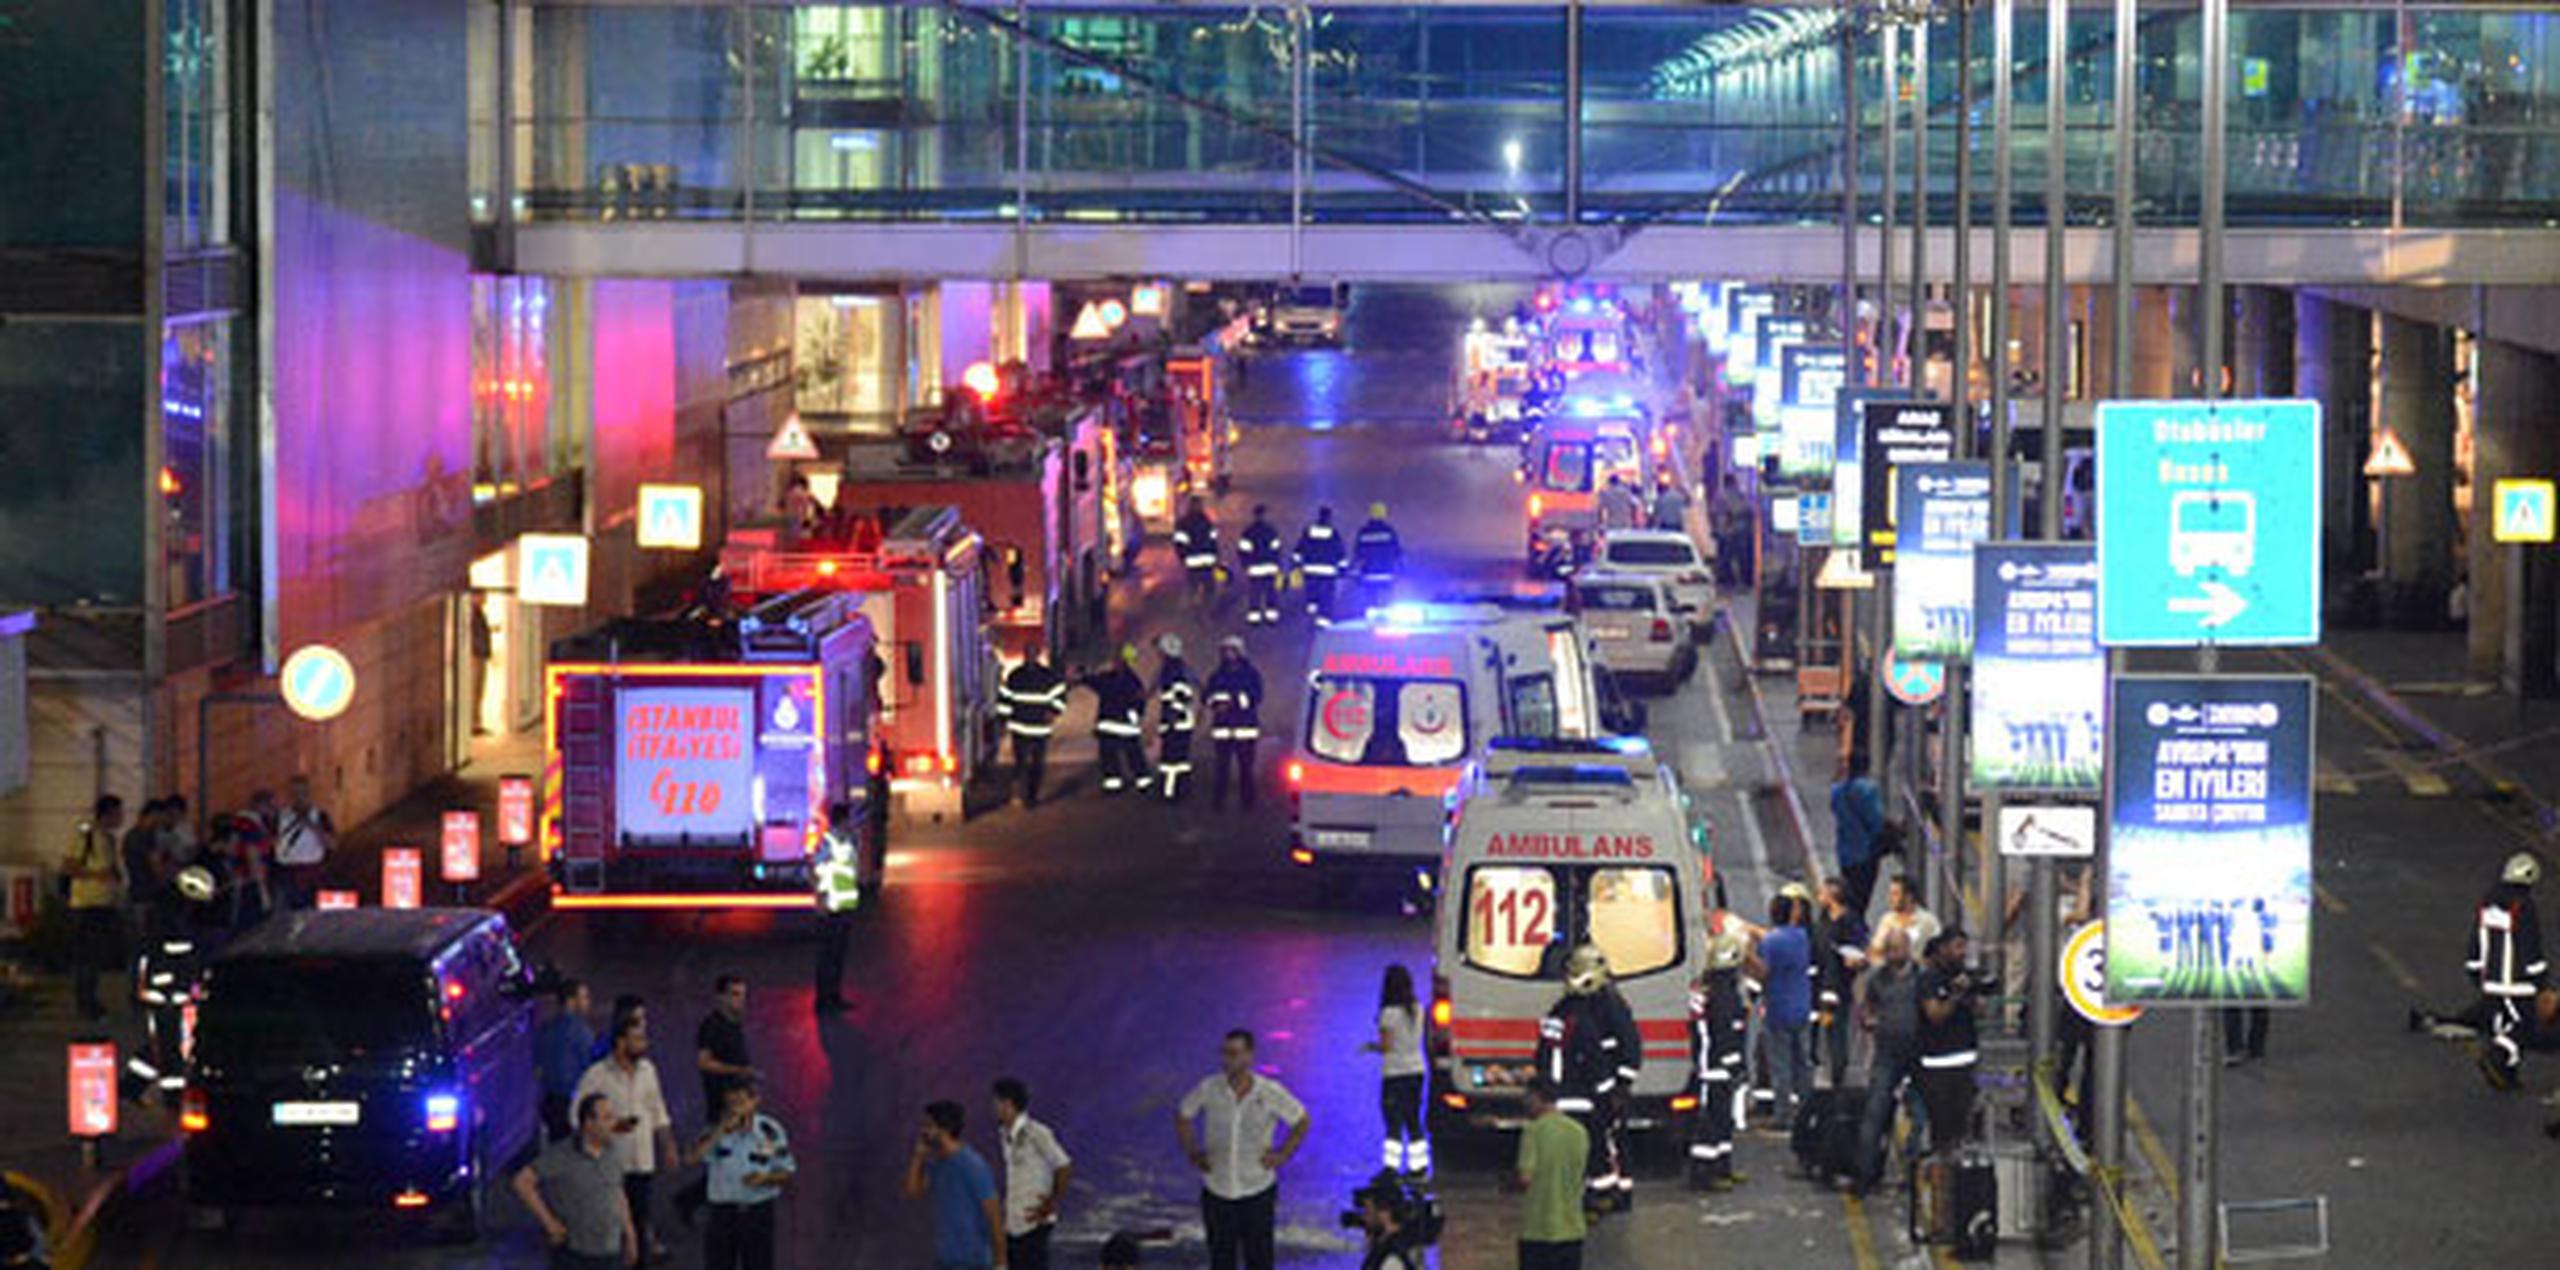 Los atacantes se hicieron estallar antes de ingresar al retén de verificación de seguridad con rayos X a la entrada del aeropuerto, indicó el funcionario. (IHA via AP)